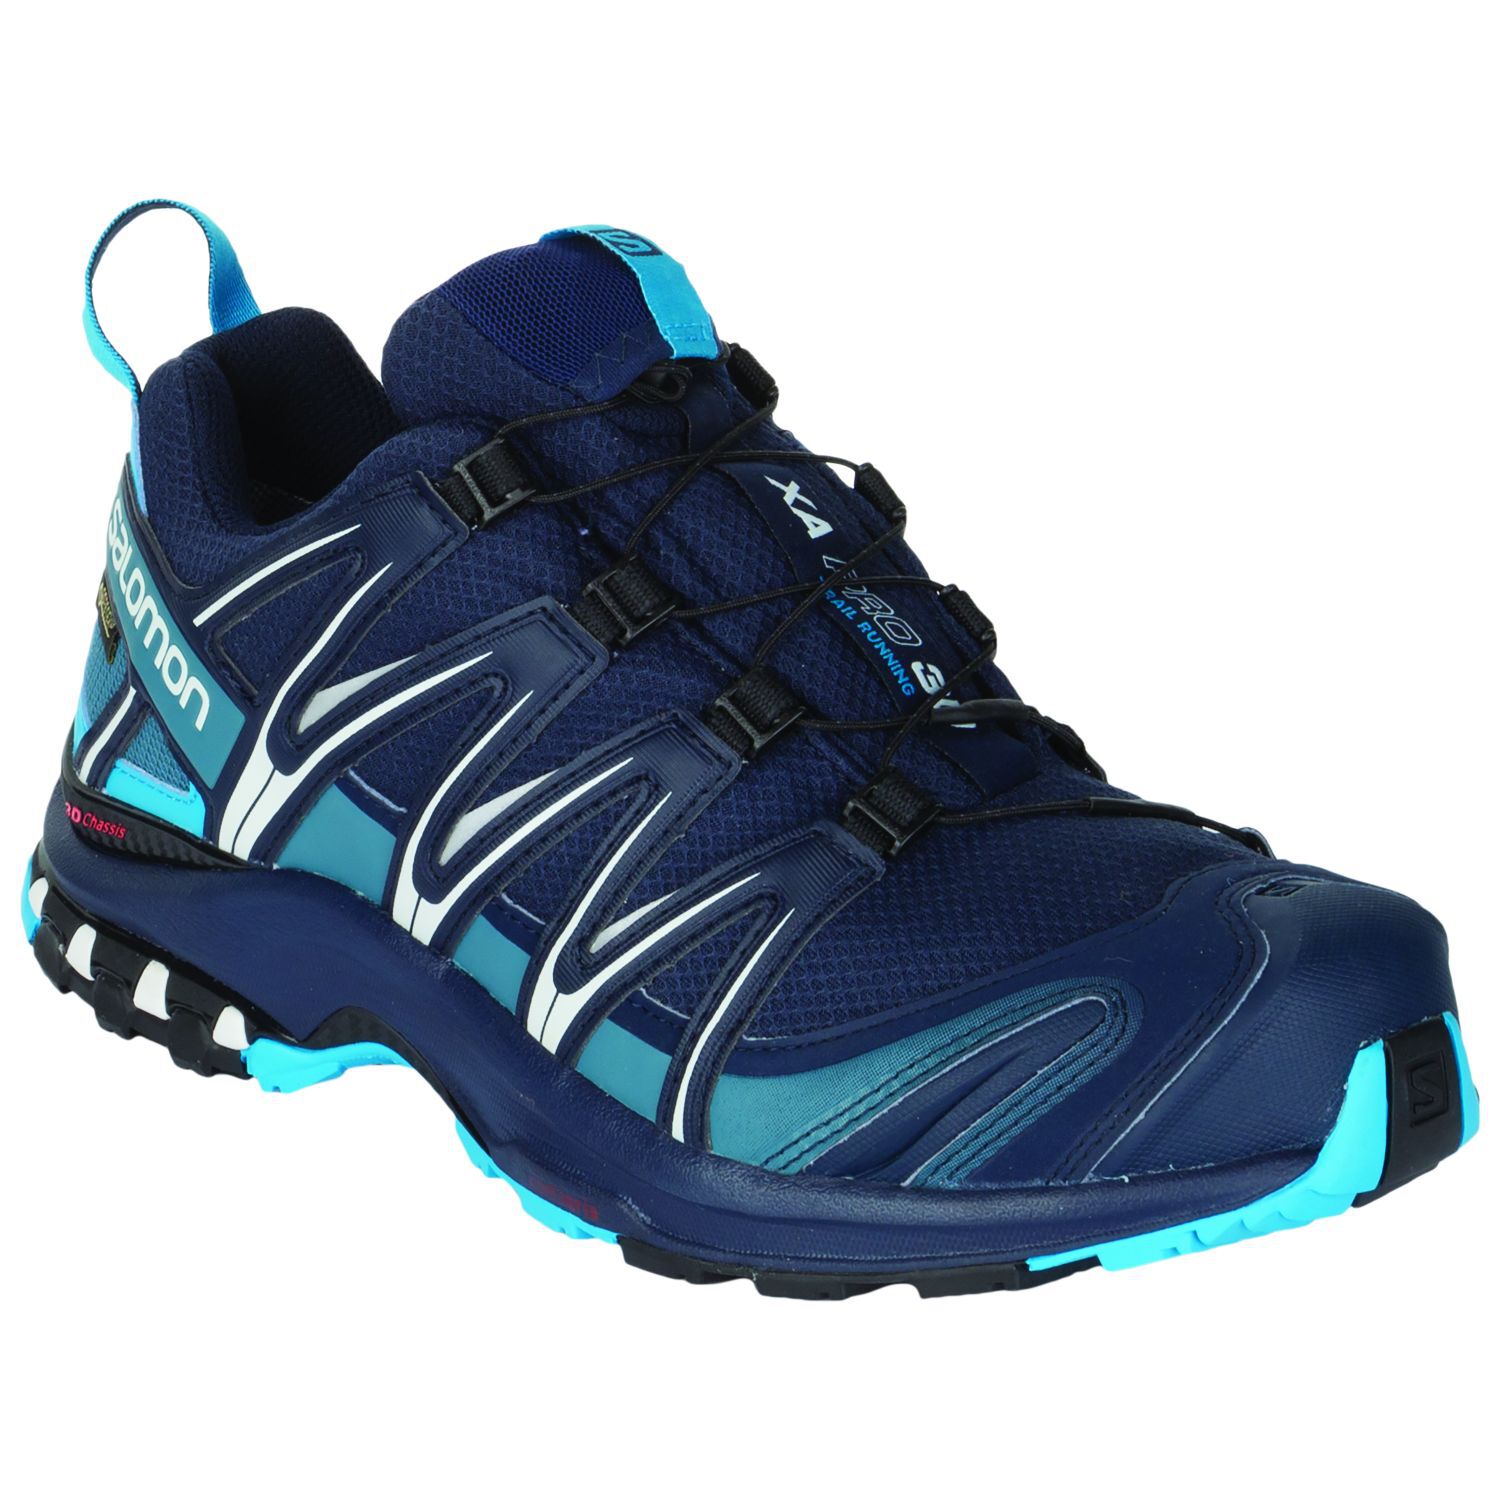 XA Pro 3D GTX Trail Running Shoe